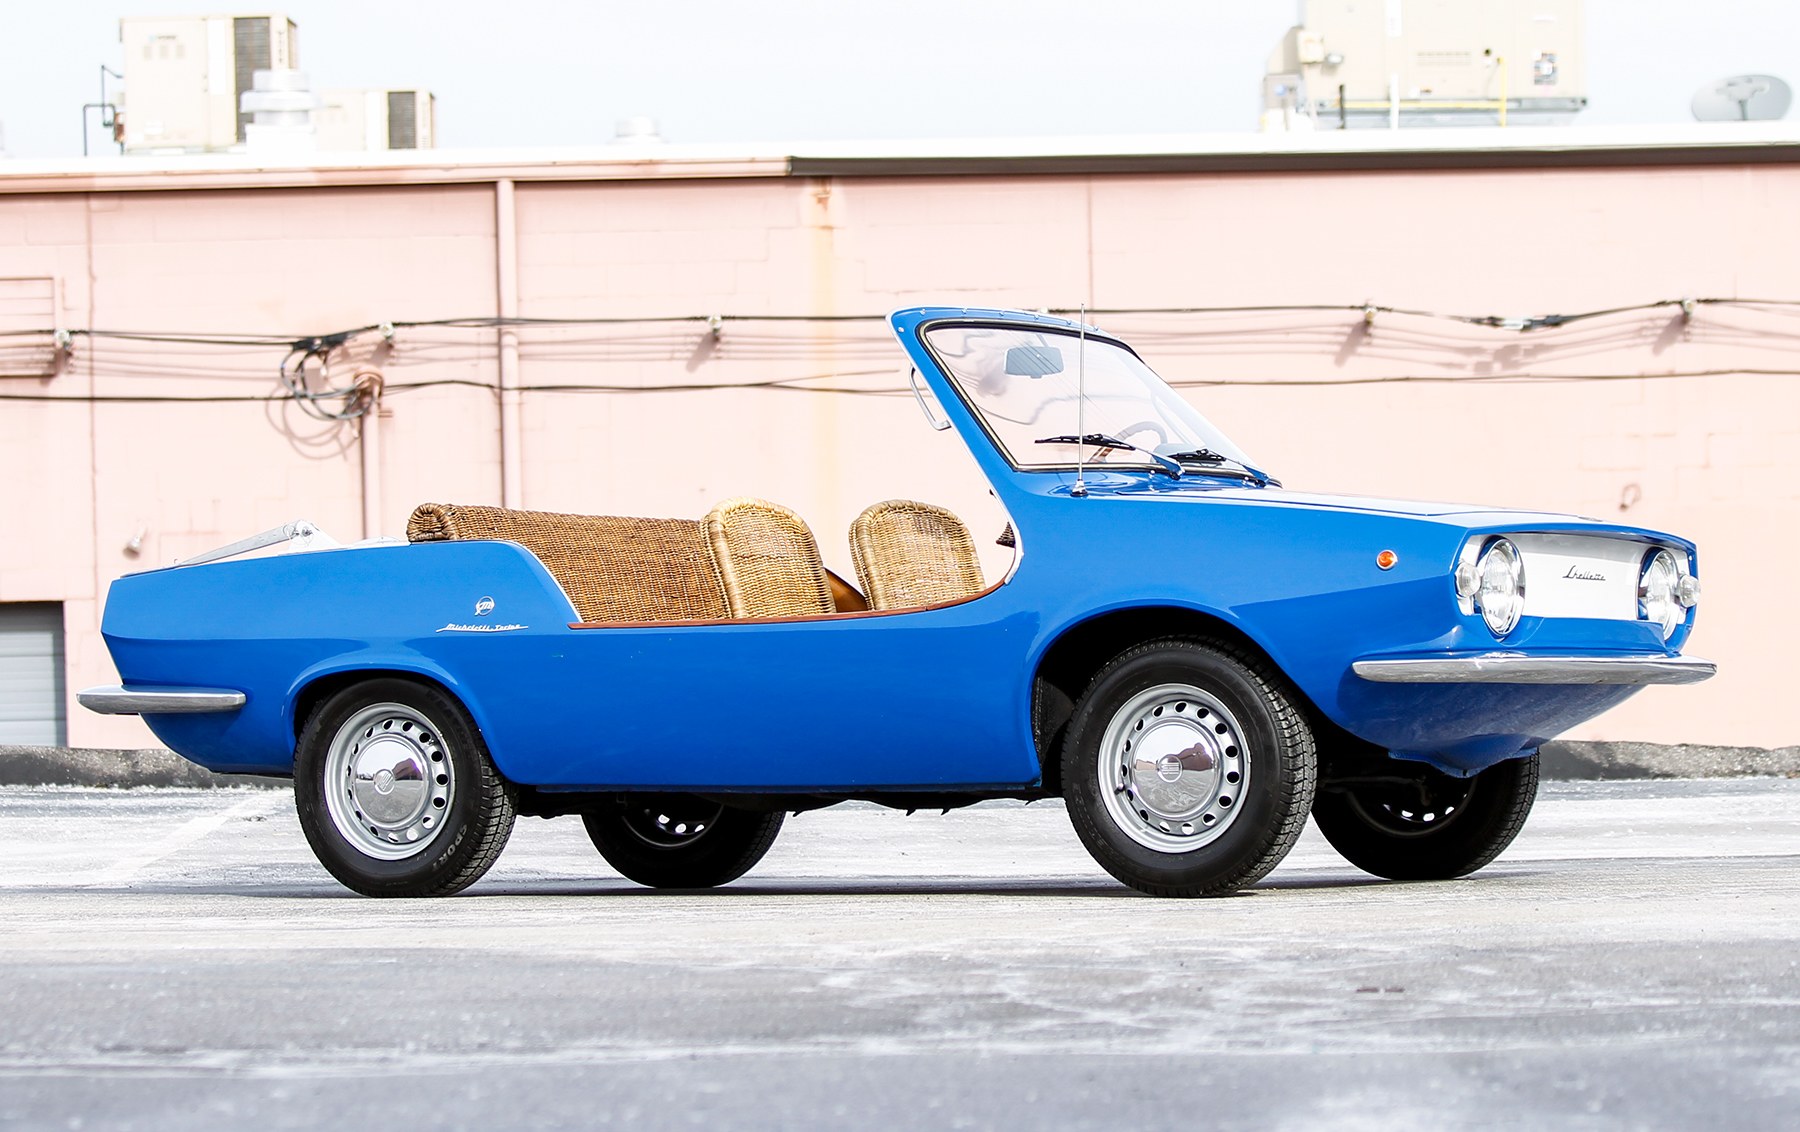 1969 Fiat Shellette